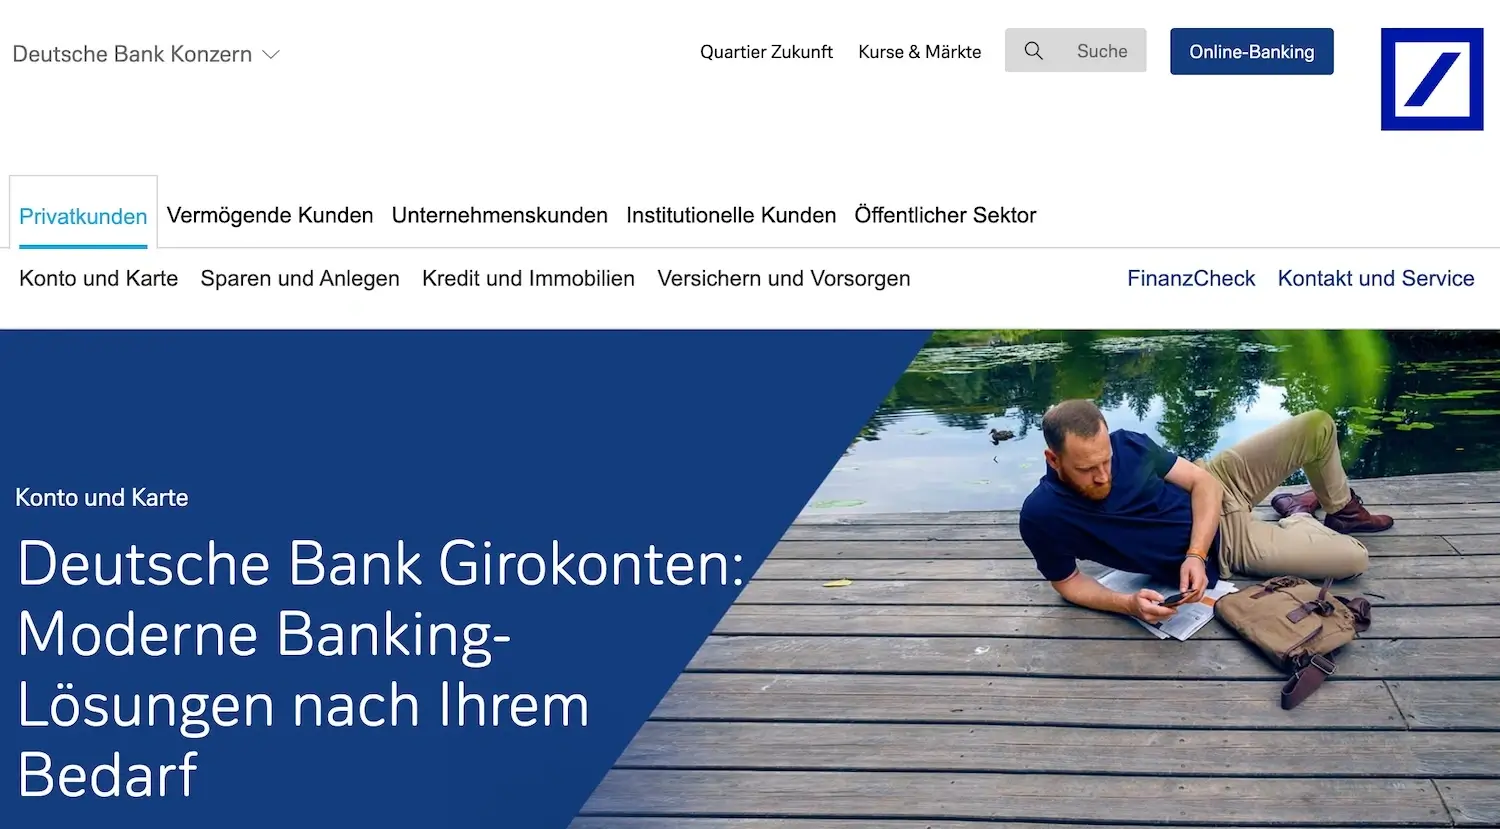 Deutsche Bank zweites Konto eröffnen